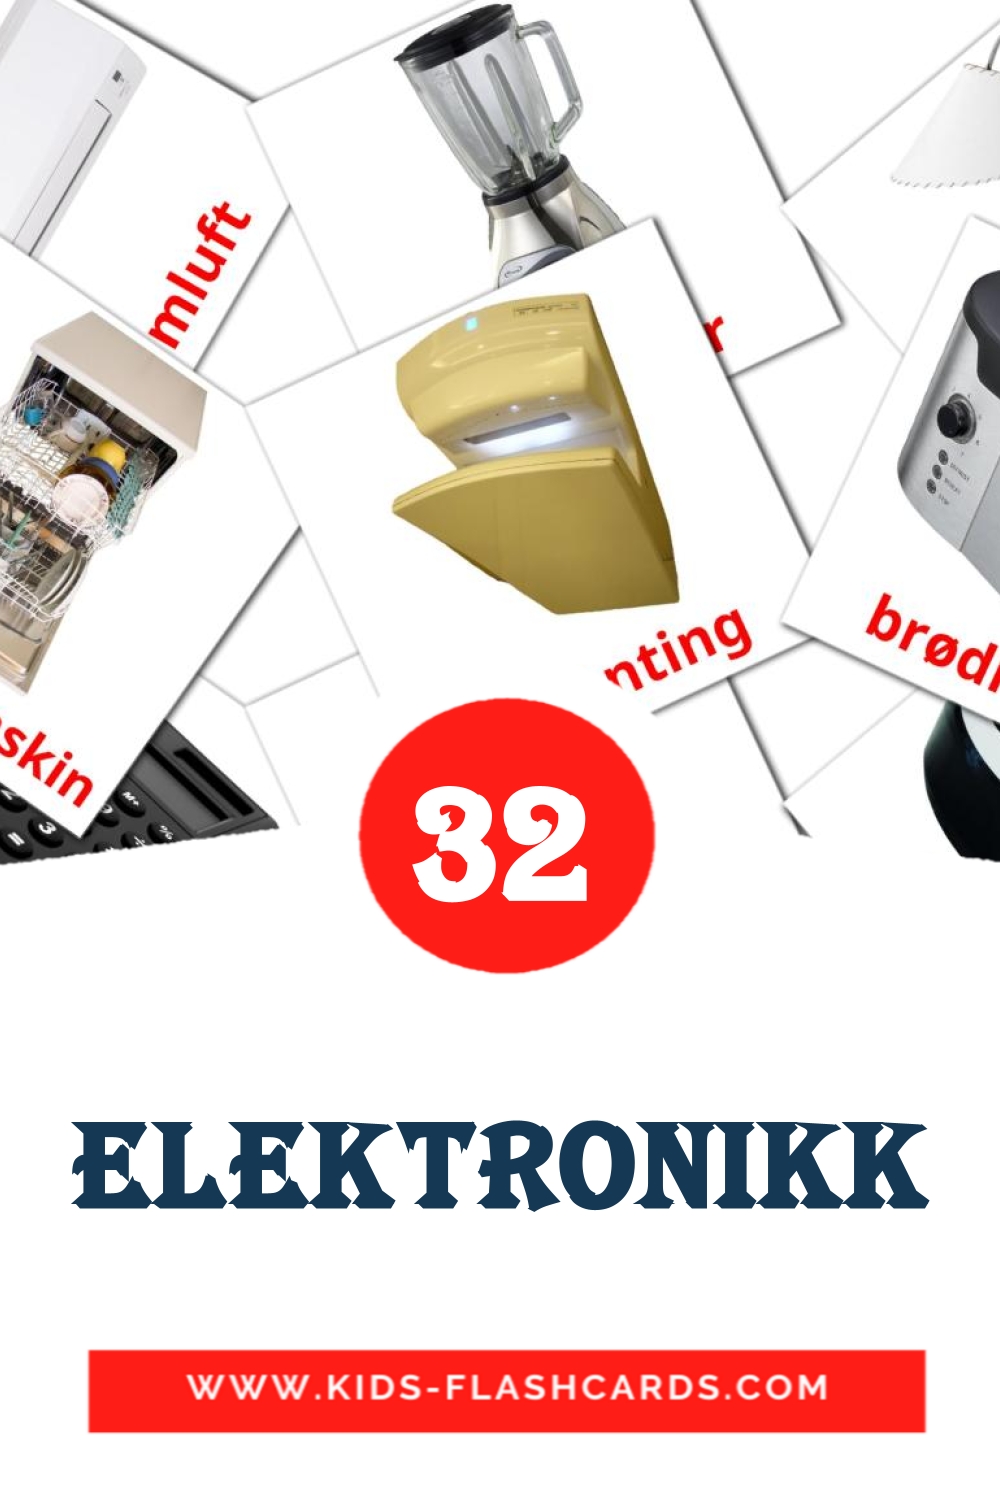 32 Cartões com Imagens de Elektronikk para Jardim de Infância em norueguês